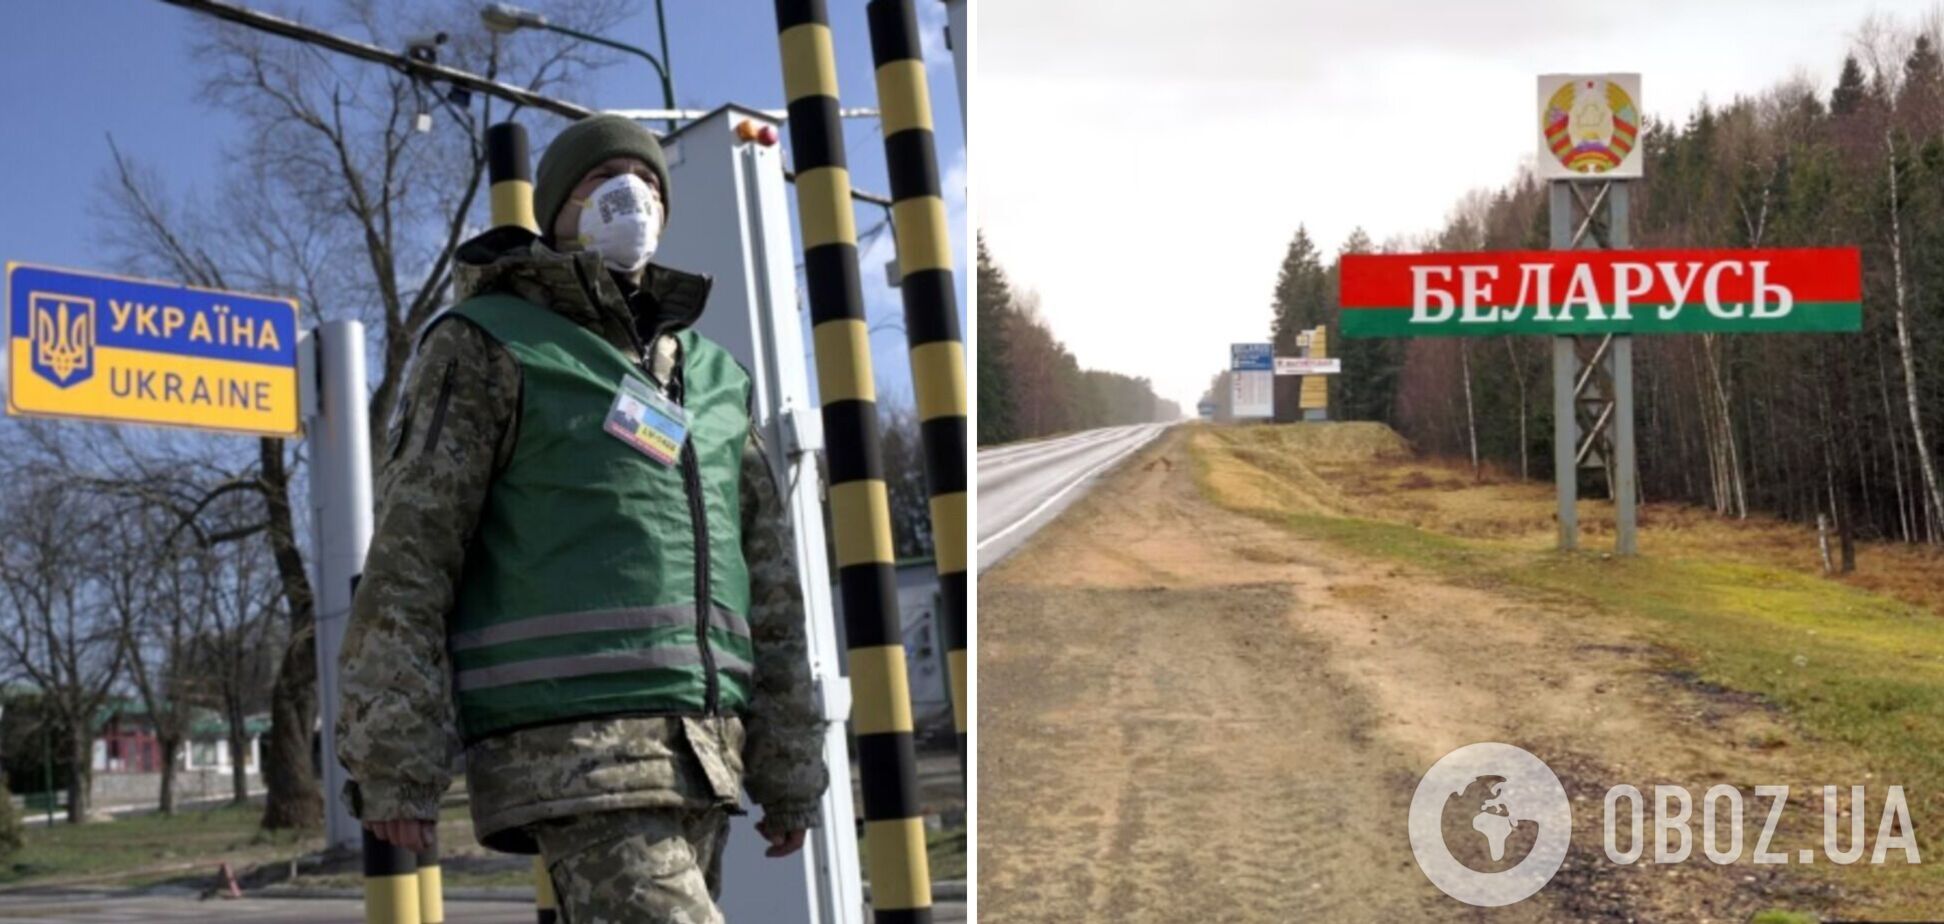 У Білорусі заявили про загрозу з боку України та ризик провокацій